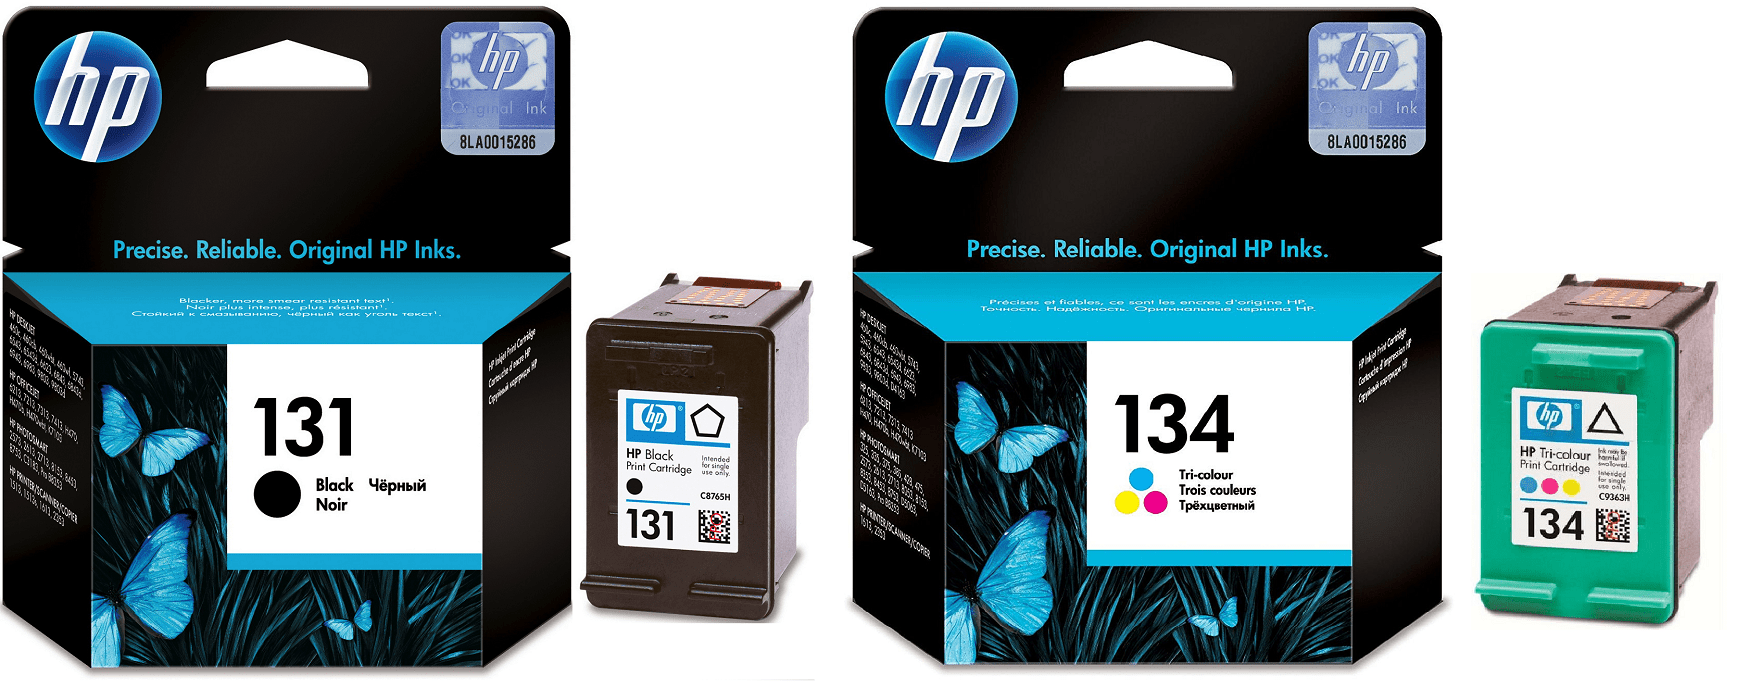 Картриджи hp 131 134 для HP Photosmart 5745. Купить комплект оригинальных чернил.